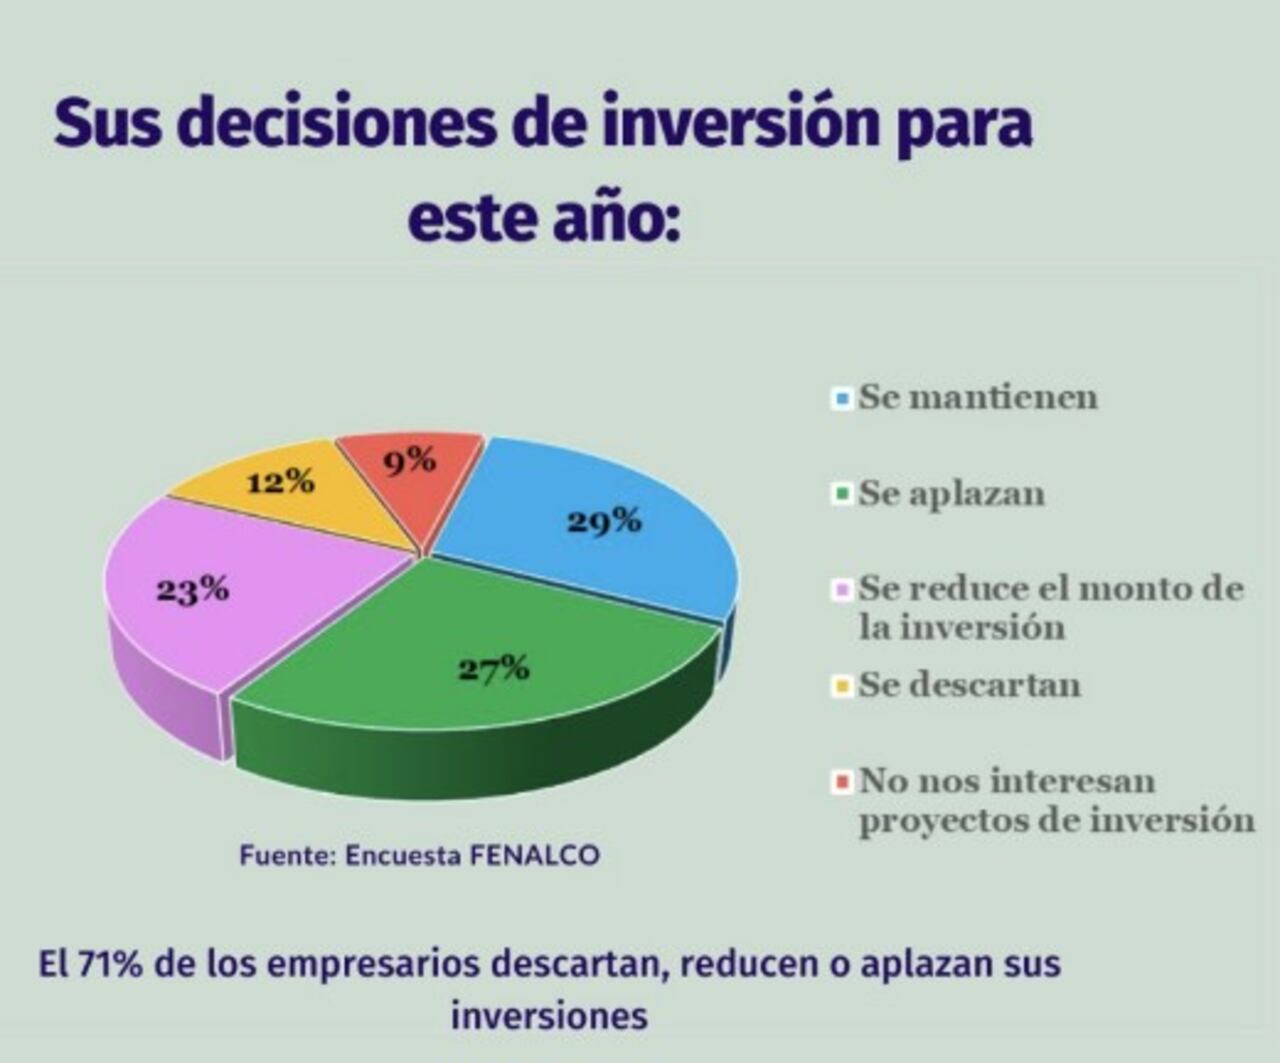 Según los comerciantes consultados por Fenalco, estas serían las decisiones que tomarían en materia de inversión frente a la Reforma Laboral.